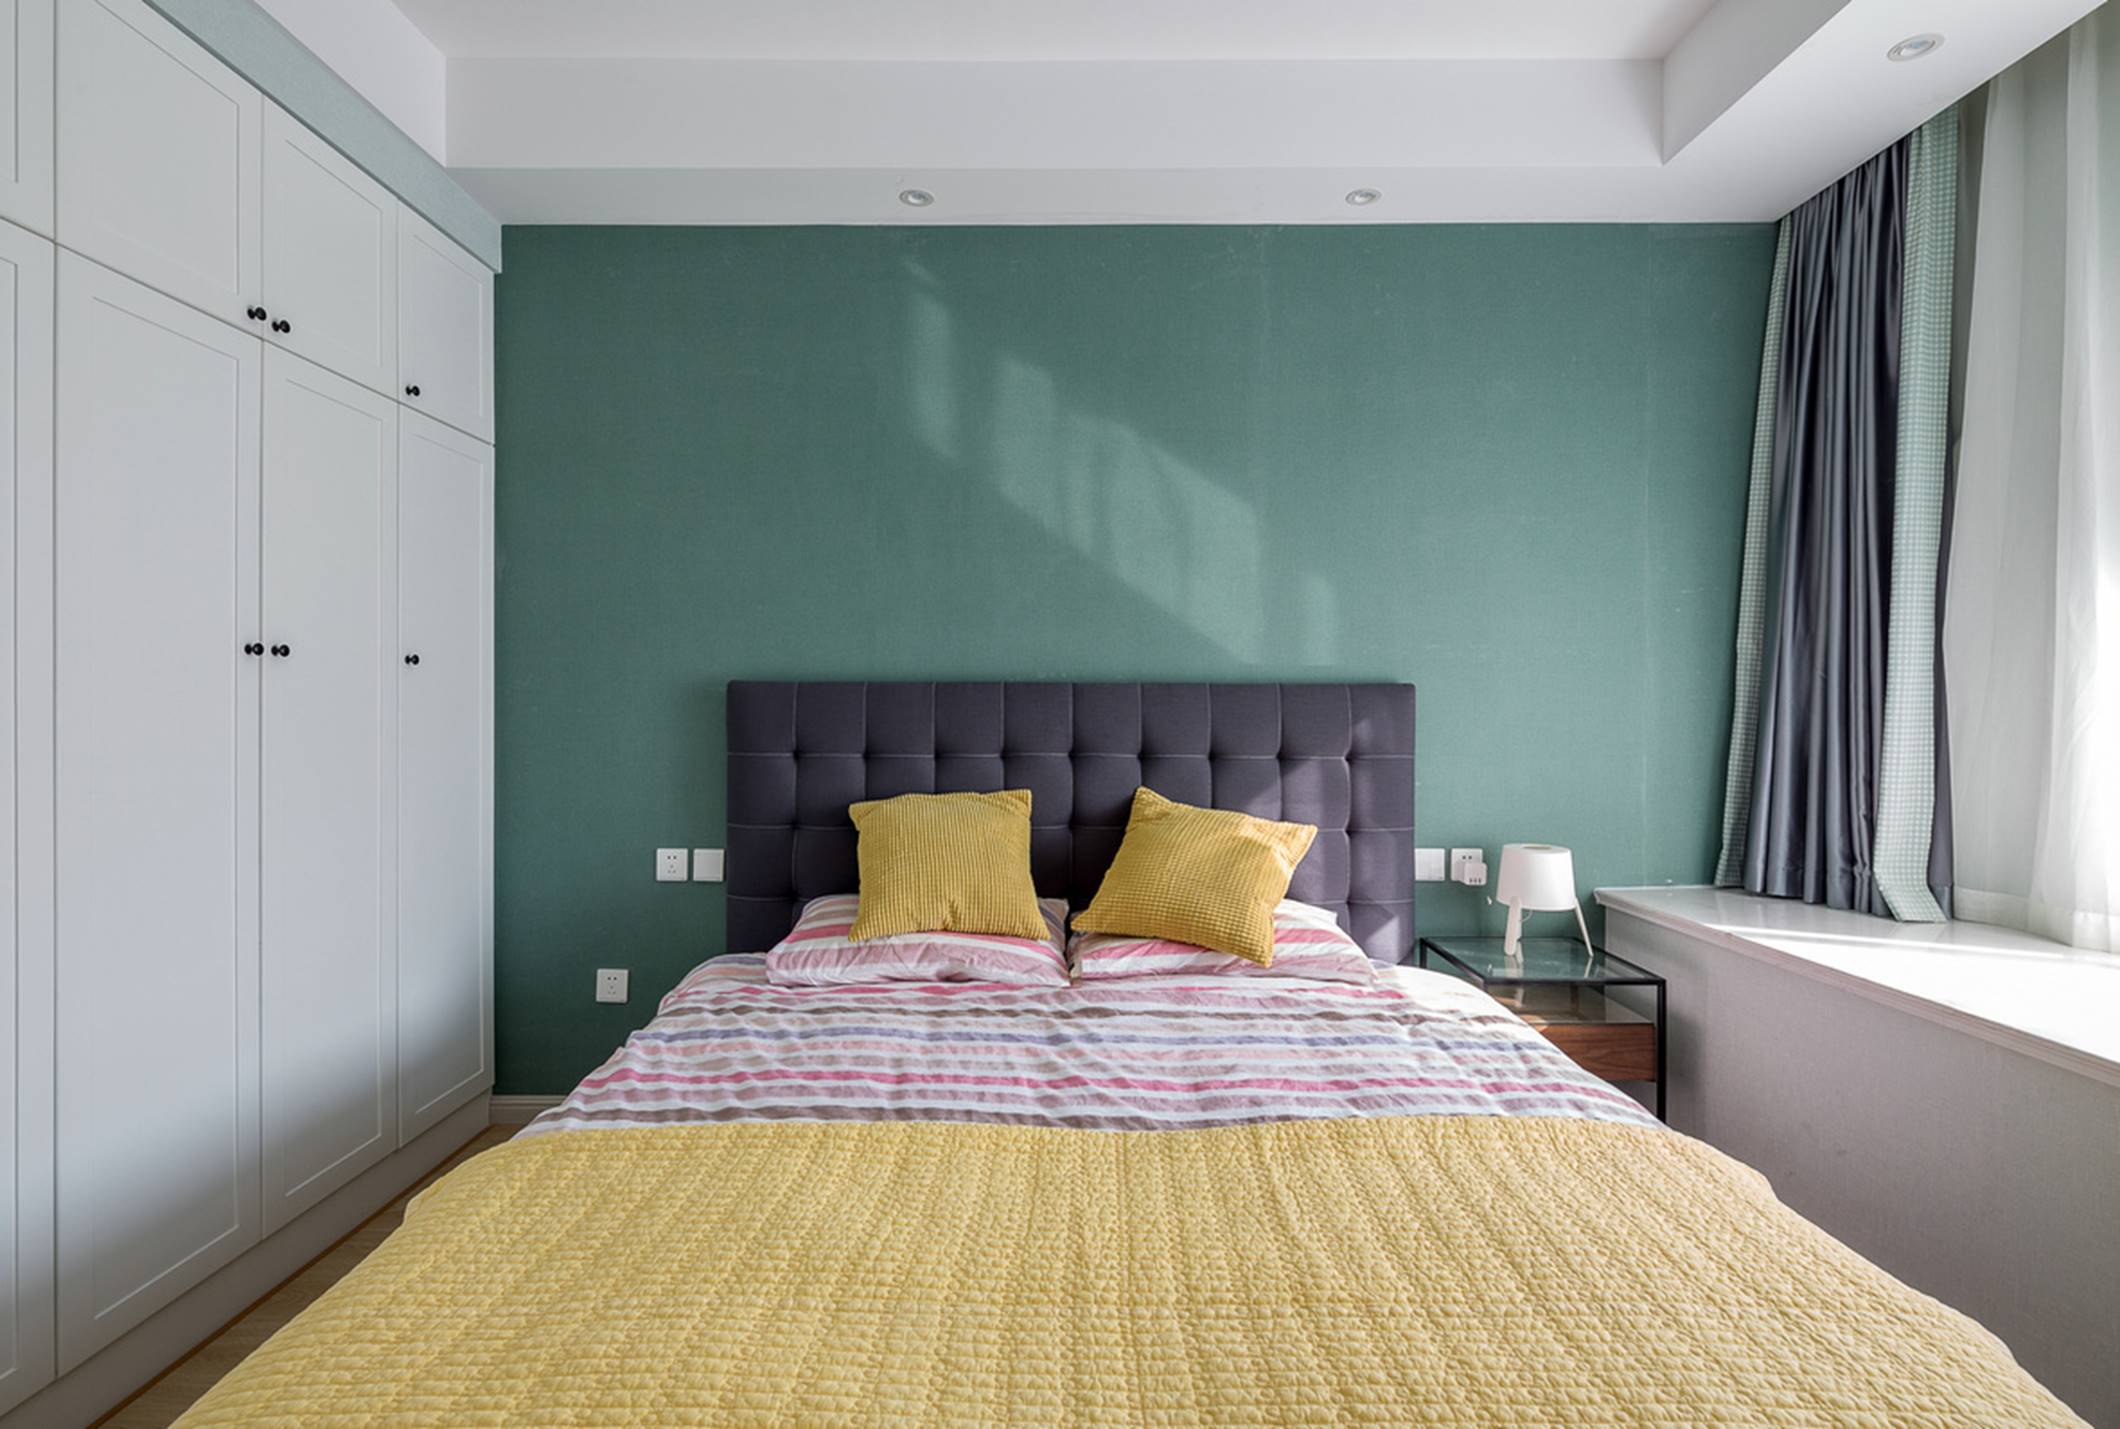 简约 别墅 混搭 三居 收纳 80后 小资 卧室图片来自重庆优家馆装饰在蓝色氛围中的怀旧意念的分享